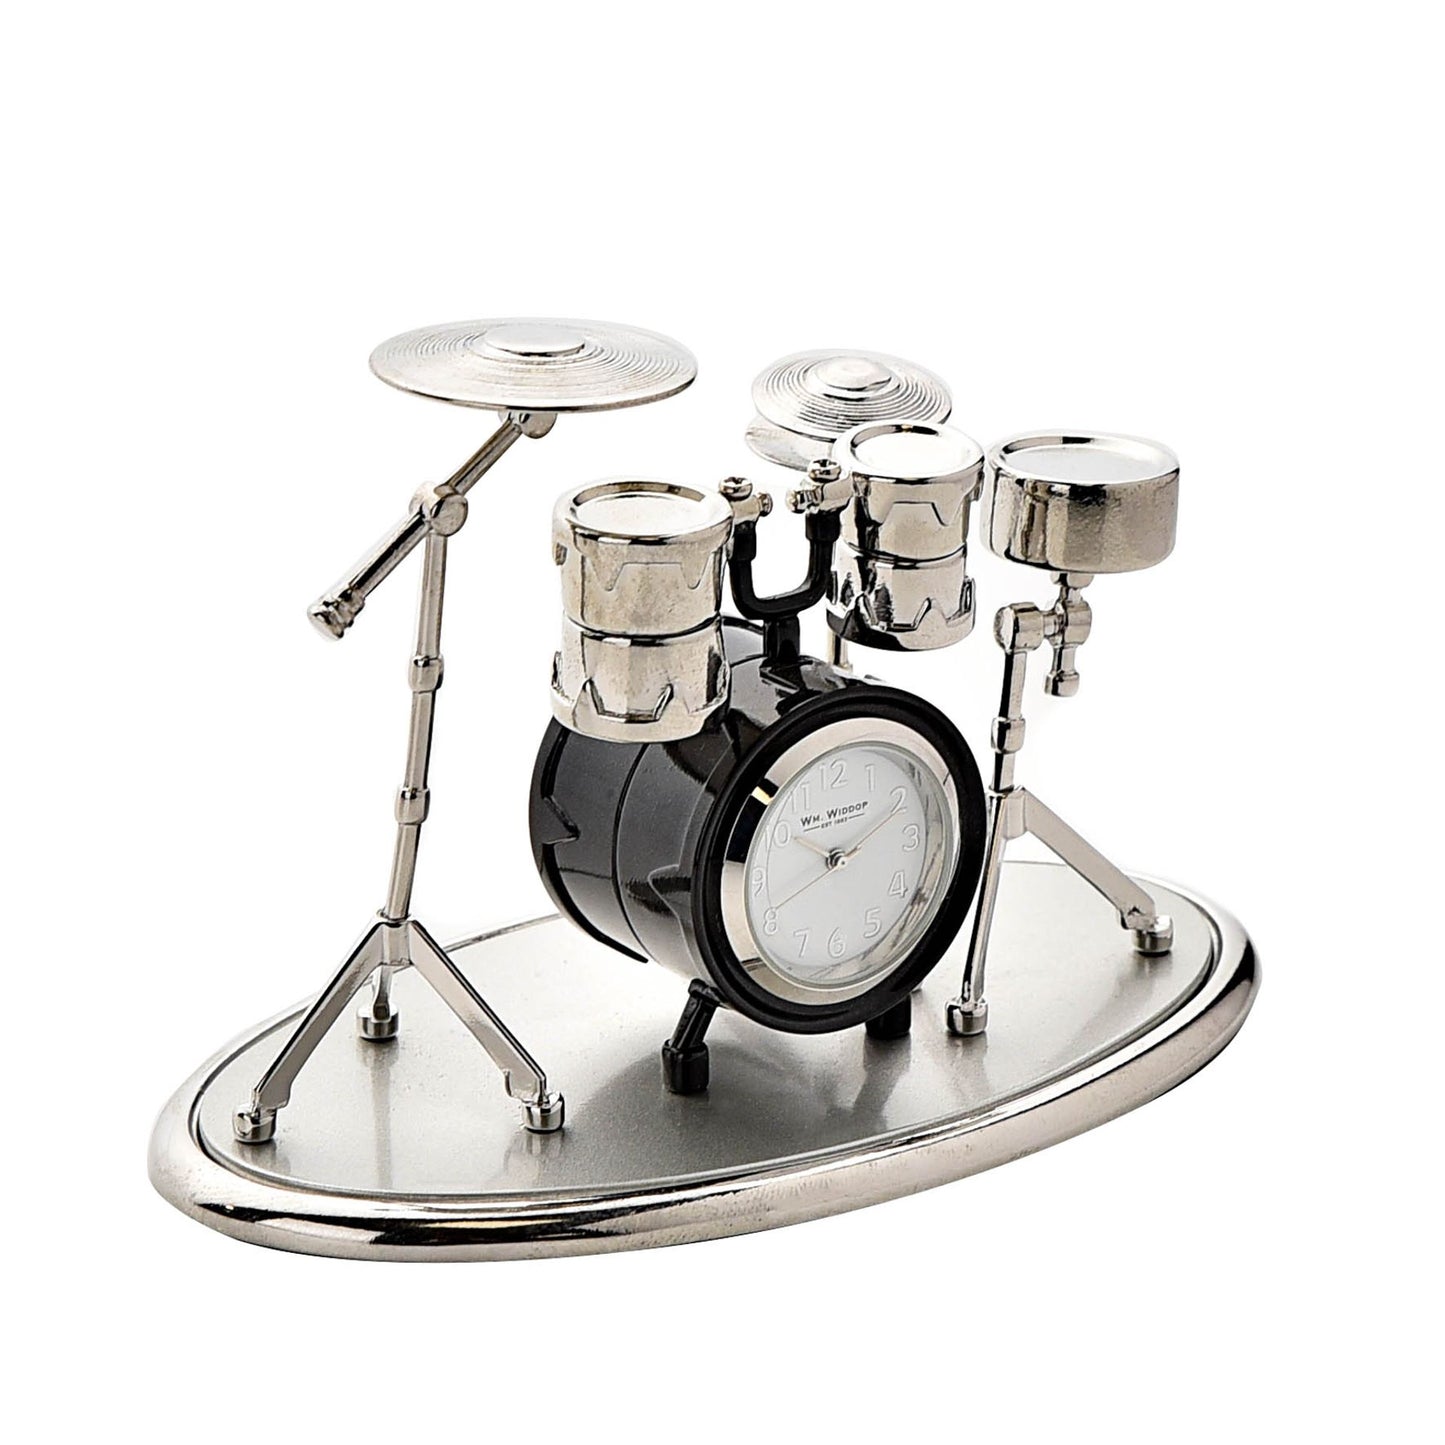 Miniature Drum Set Clock